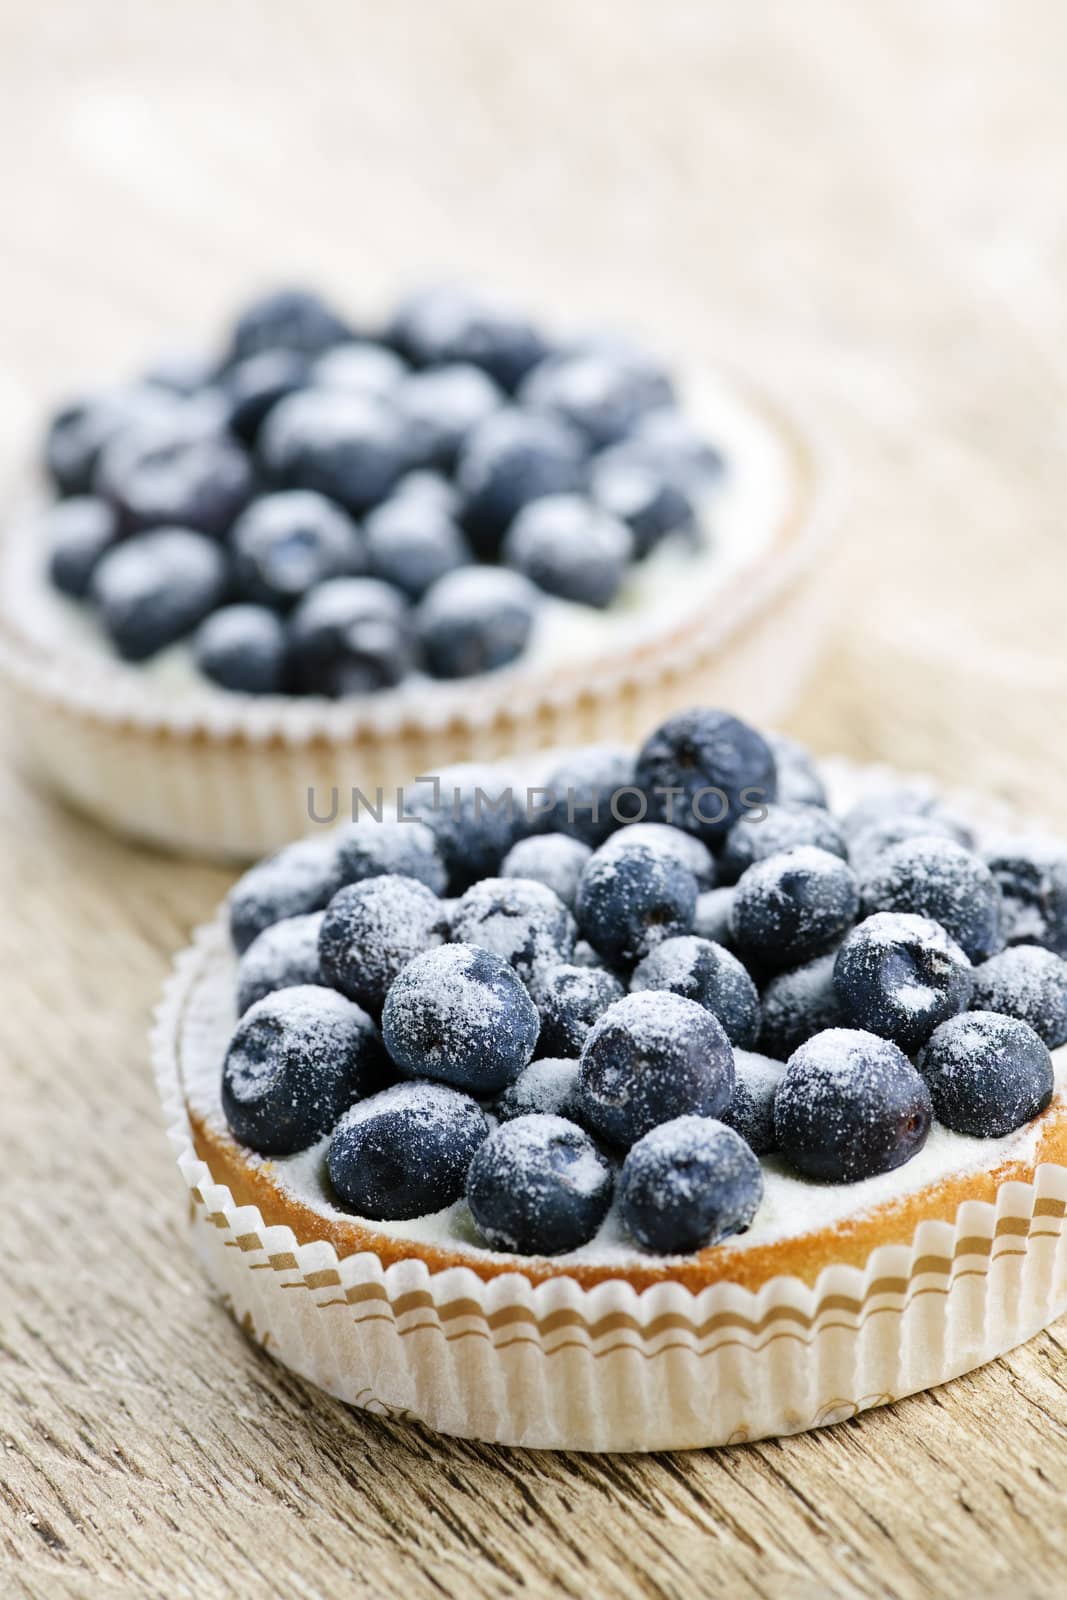 Closeup of fancy gourmet fresh blueberry dessert tarts